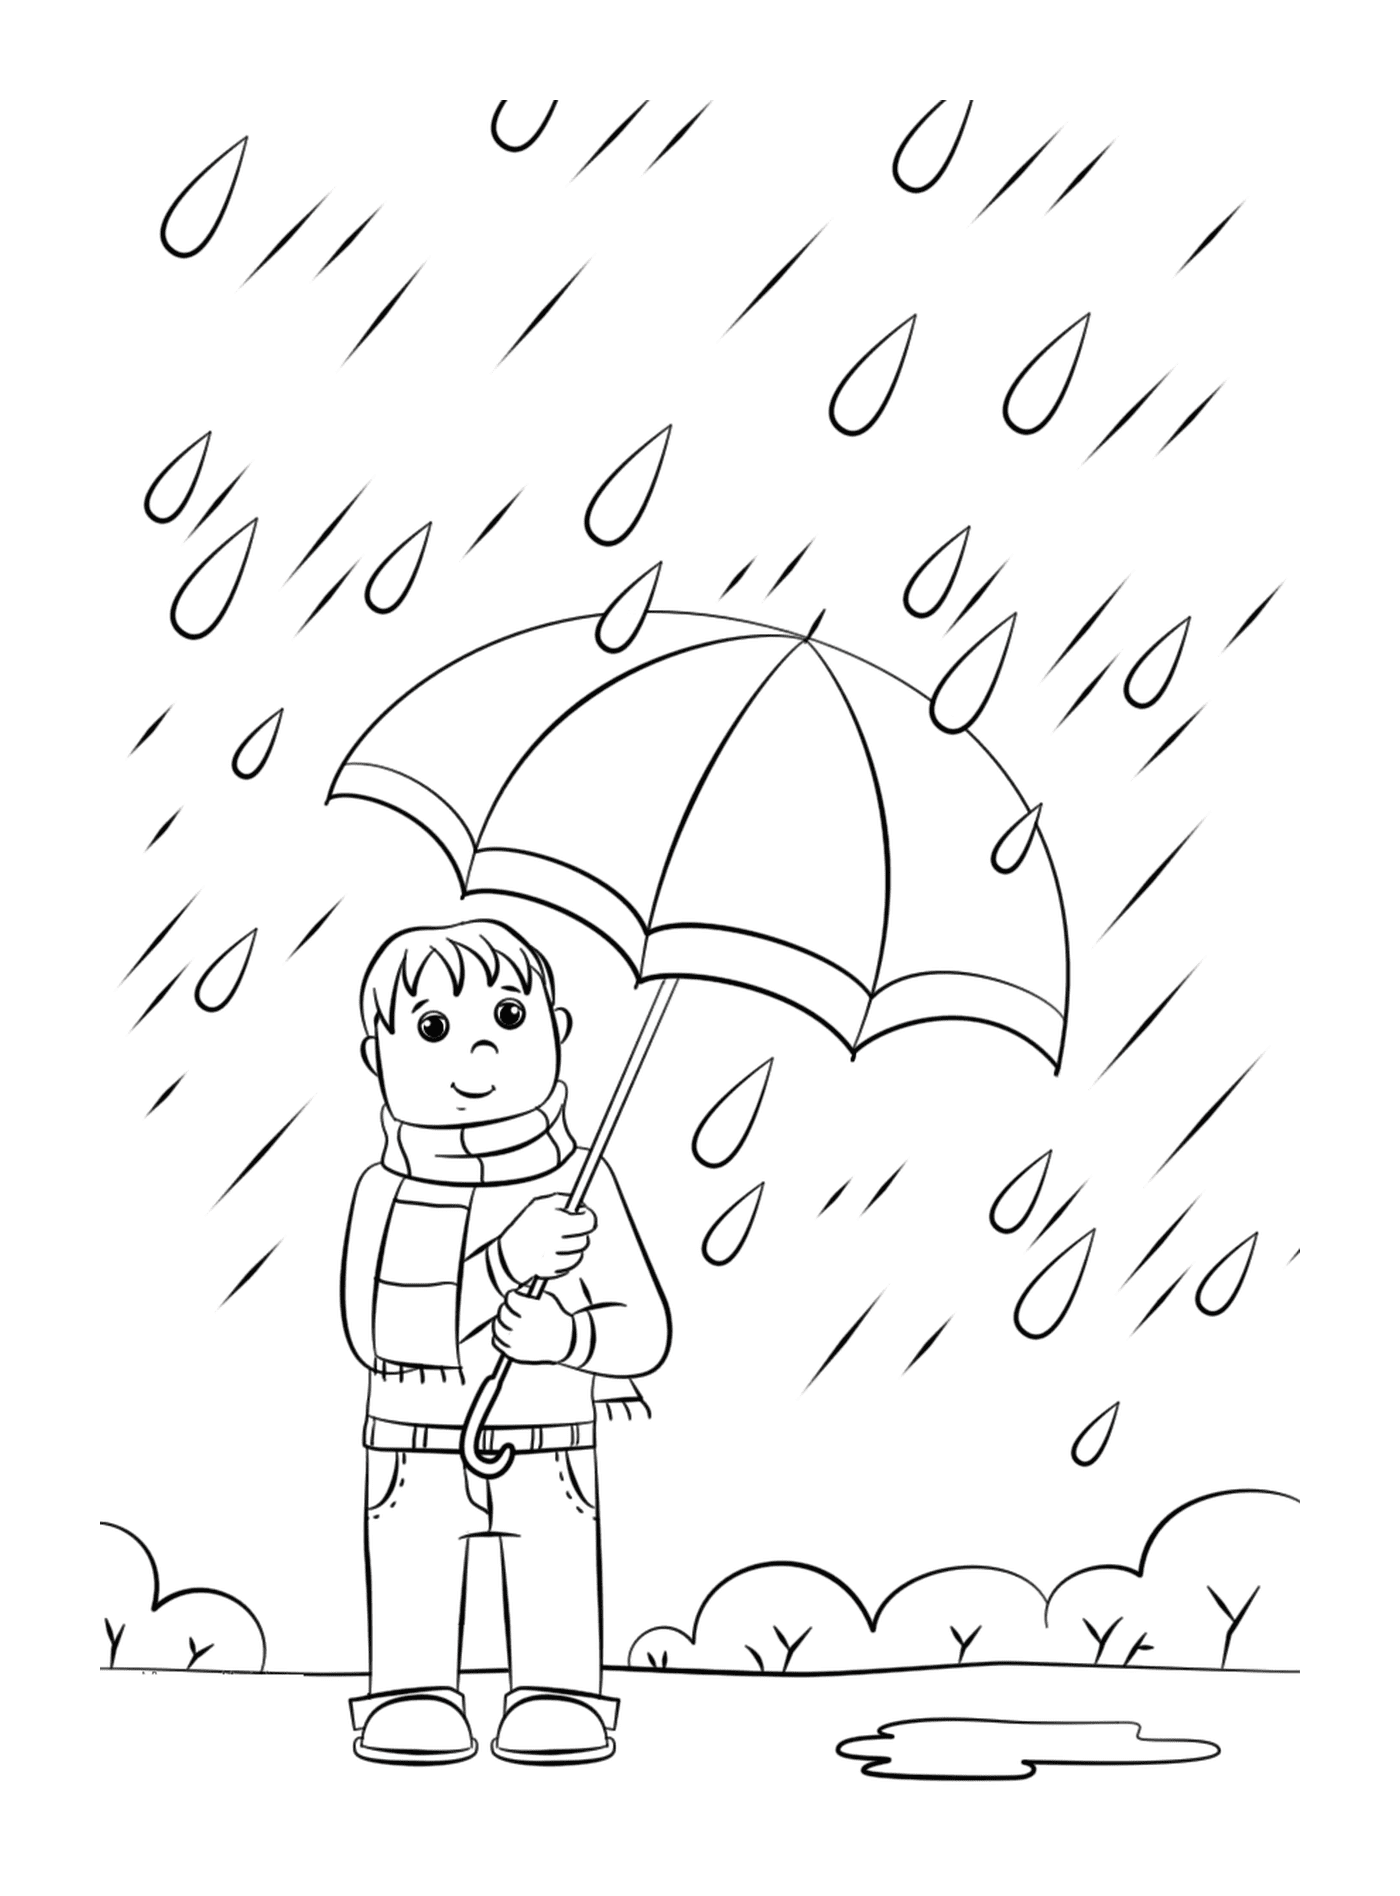  Человек, держащий зонтик под дождем 